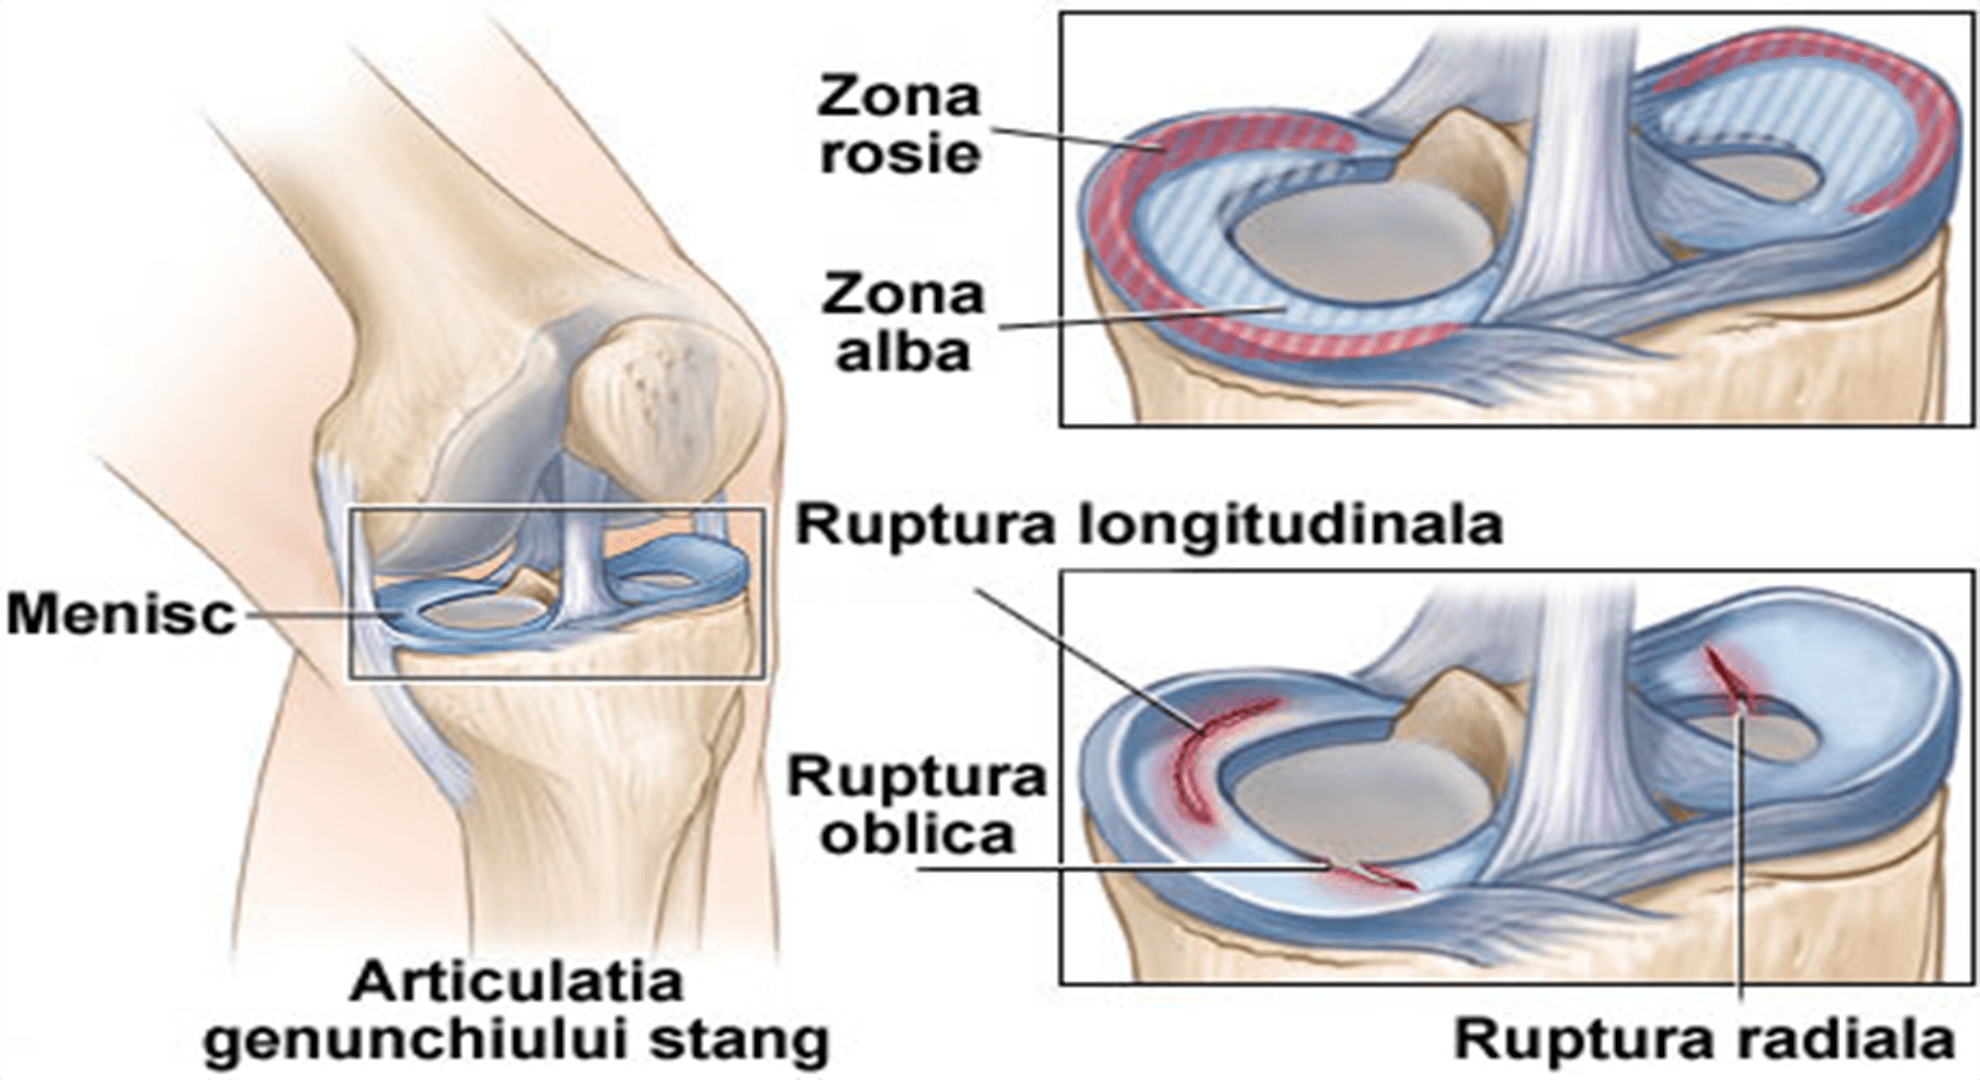 Tratamentul inflamației meniscului articulației genunchiului